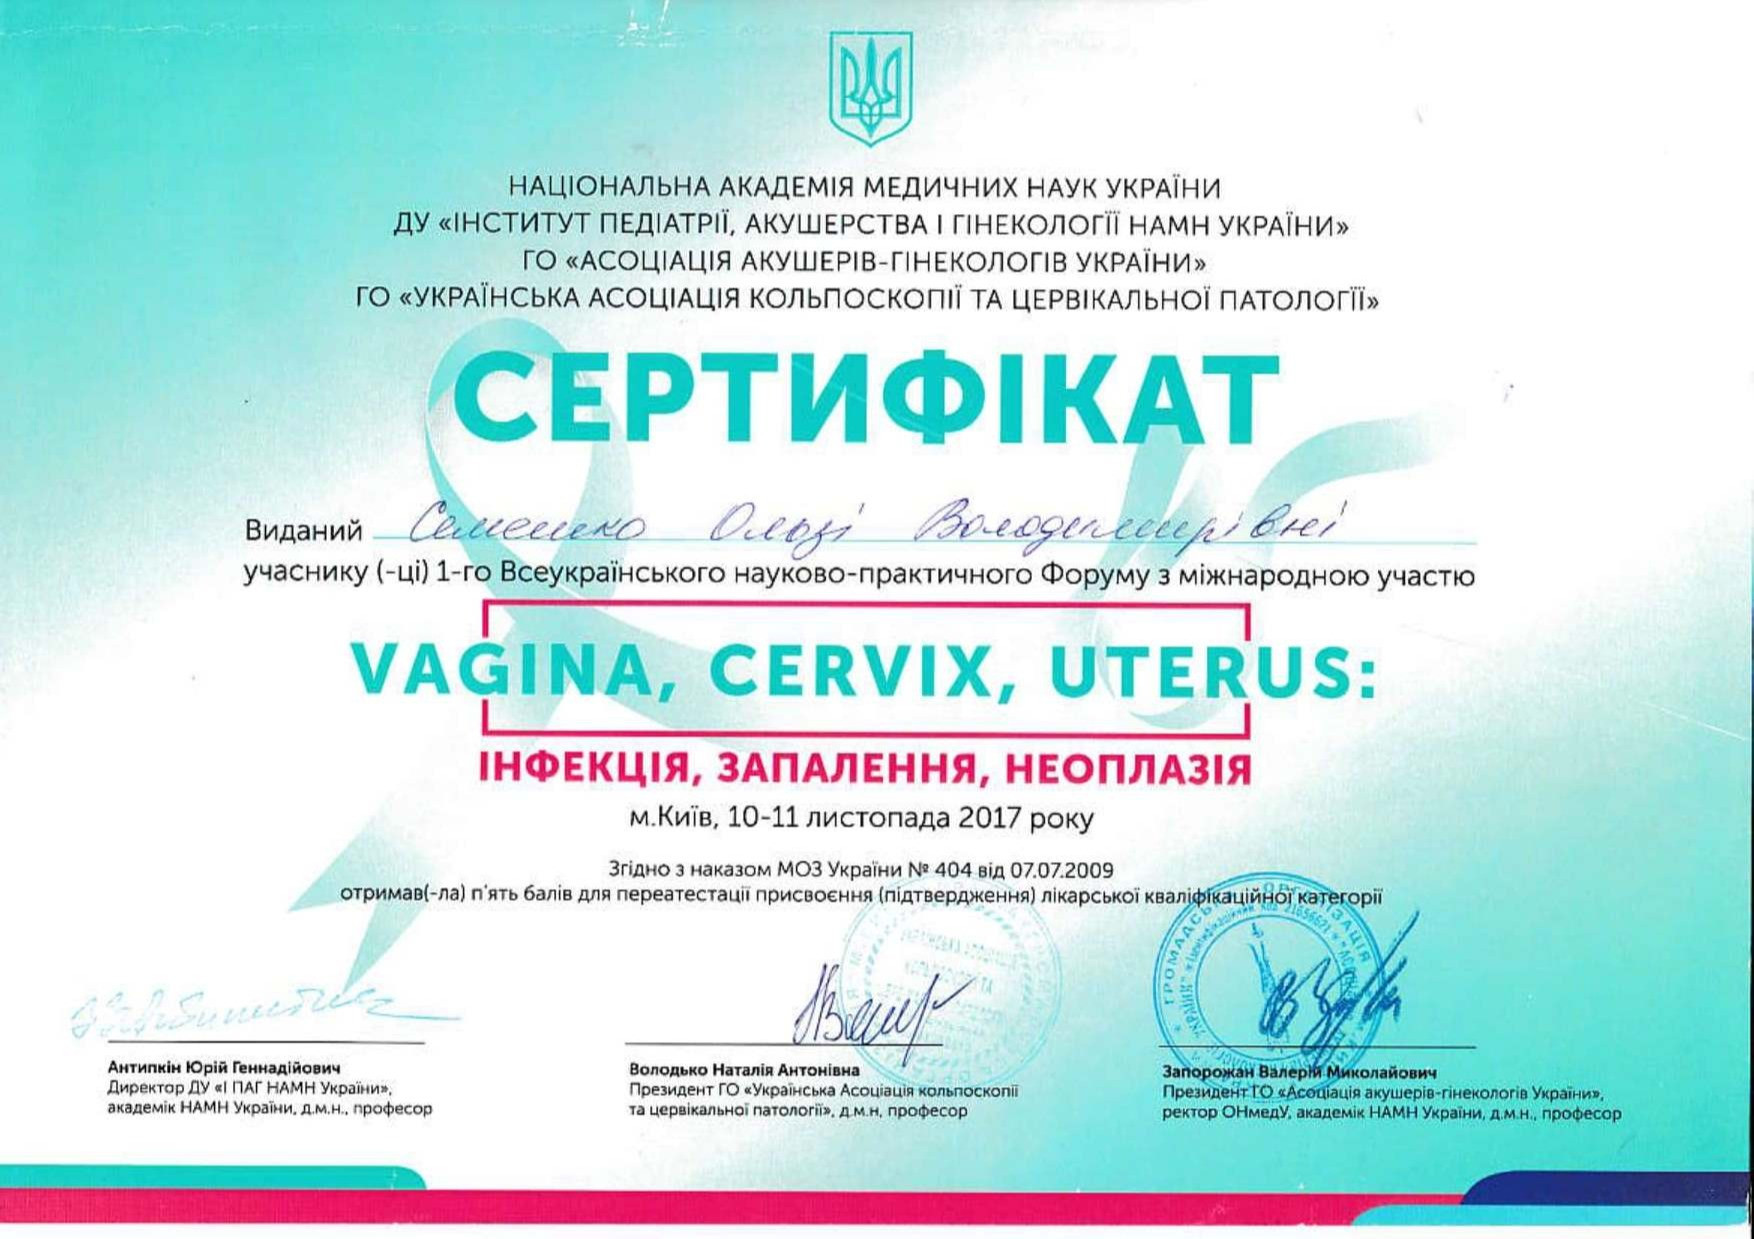 Сертификат об участии во Всеукраинском научно-практическом форуме с международным участием